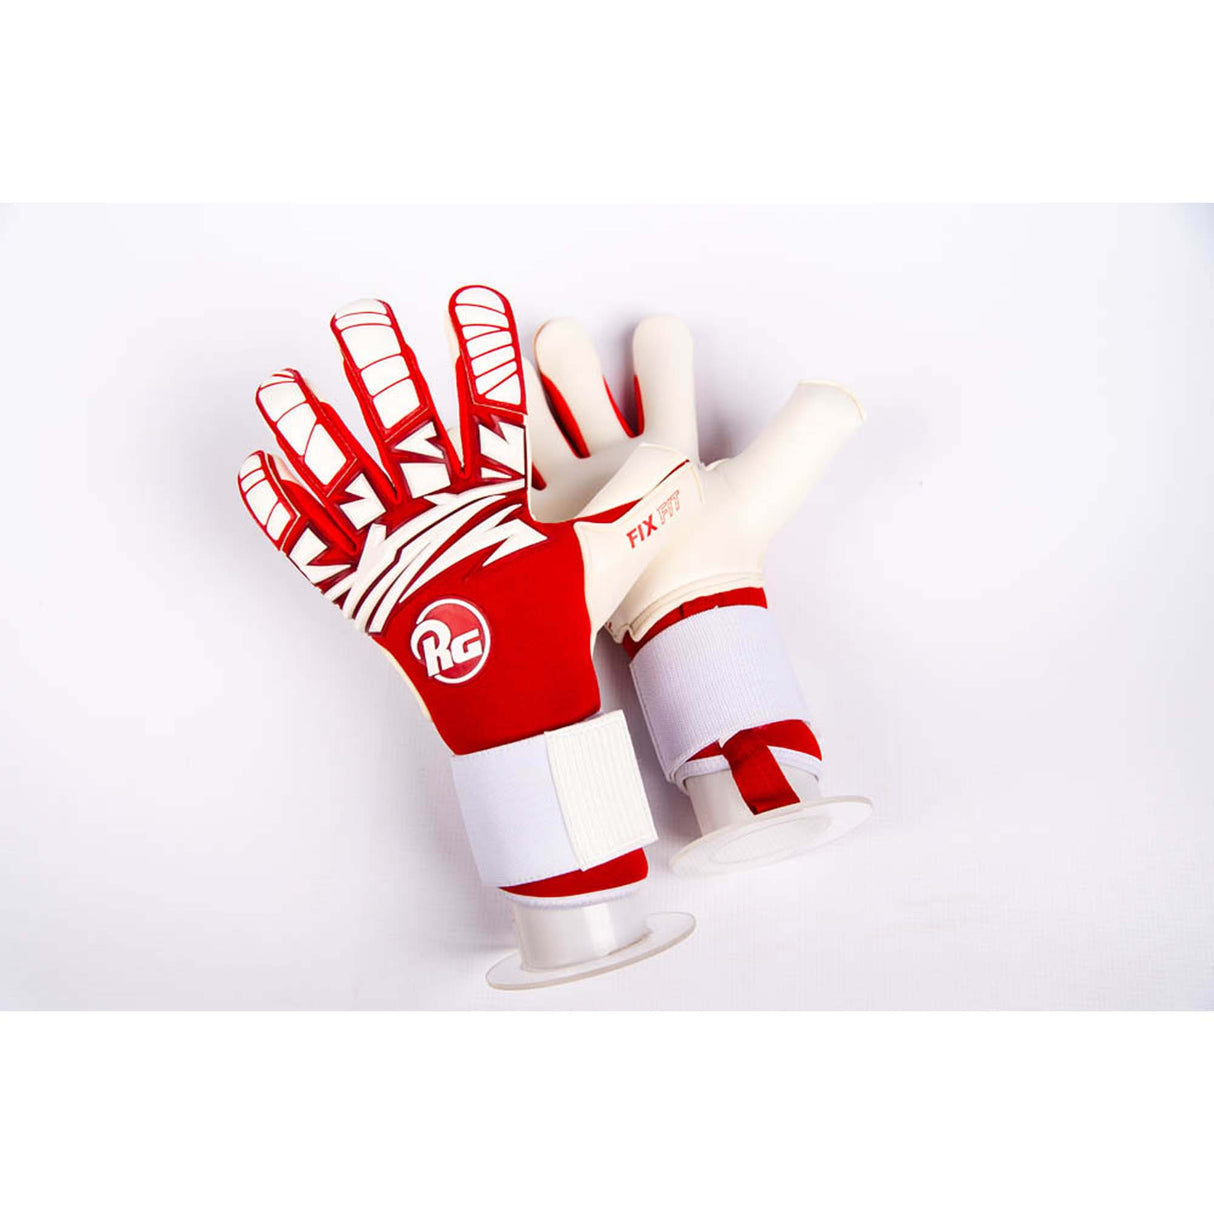 tuanis-2020-5RG Goalkepper gloves Tuanis 2020 Gants de gardien de buts de soccer paire